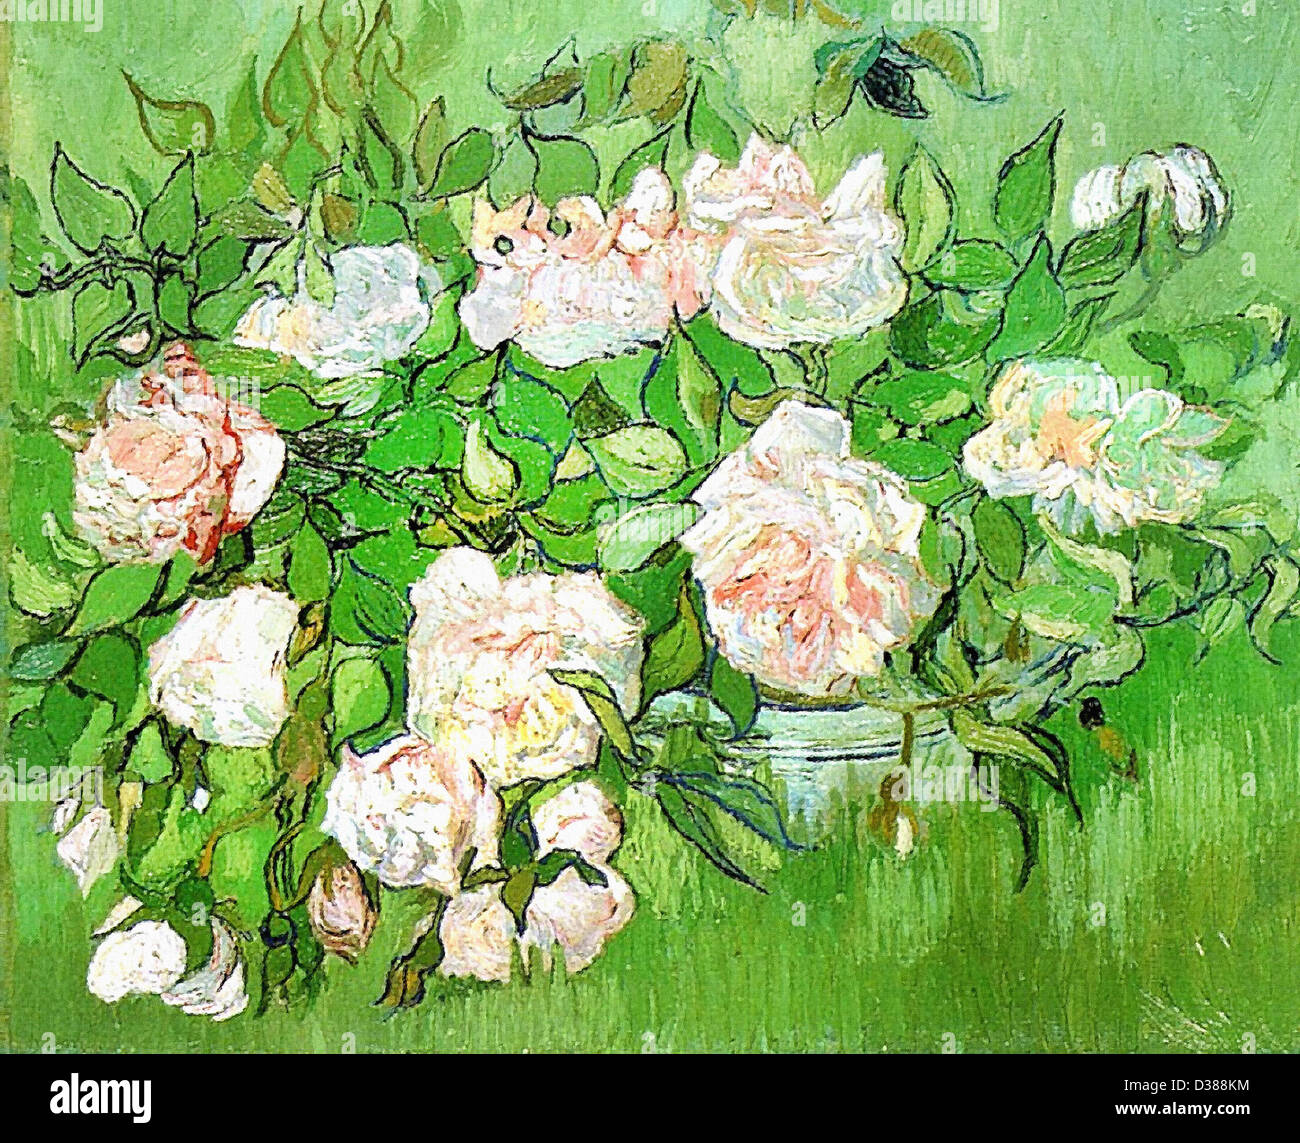 Vincent Van Gogh, Stillleben - rosa Rosen. 1890. Post-Impressionismus. Öl auf Leinwand. Ny Carlsberg Glyptotek, Kopenhagen, Dänemark. Stockfoto